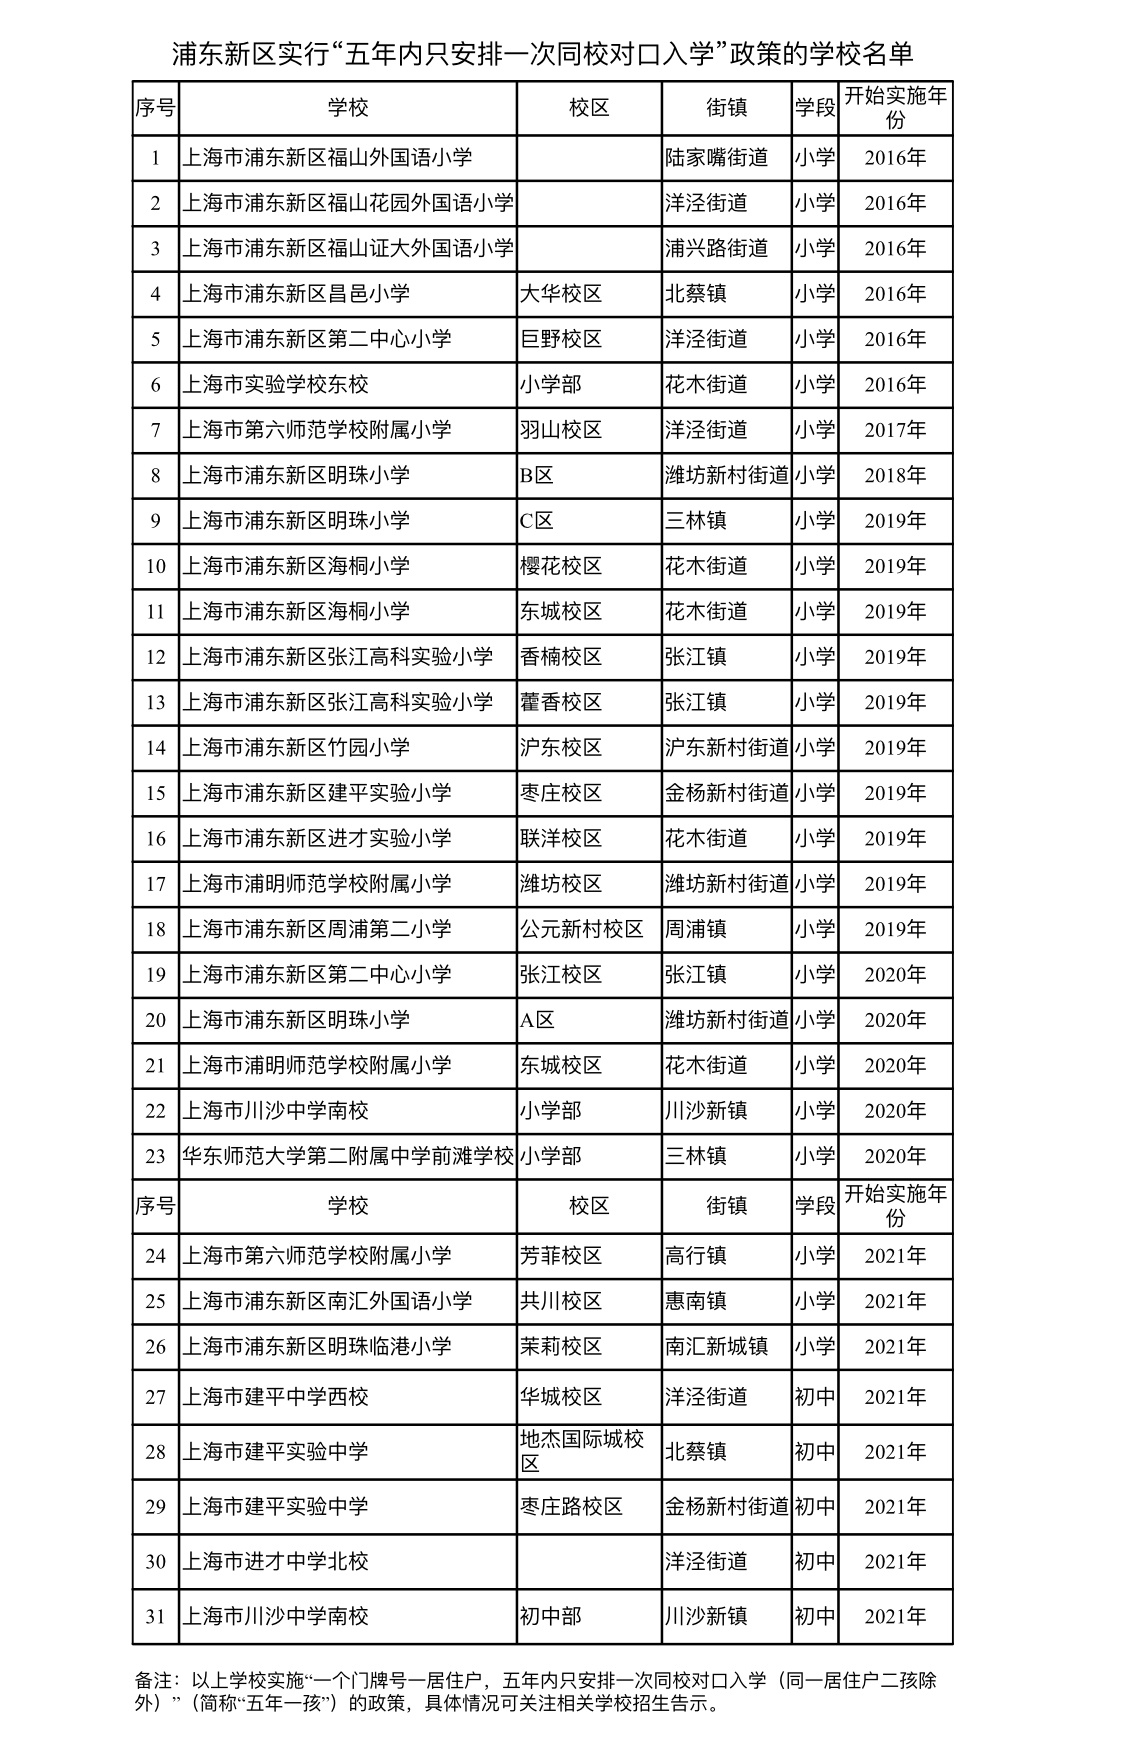 2、浦东新区初中最新排名：上海市浦东新区重点初中有哪些？